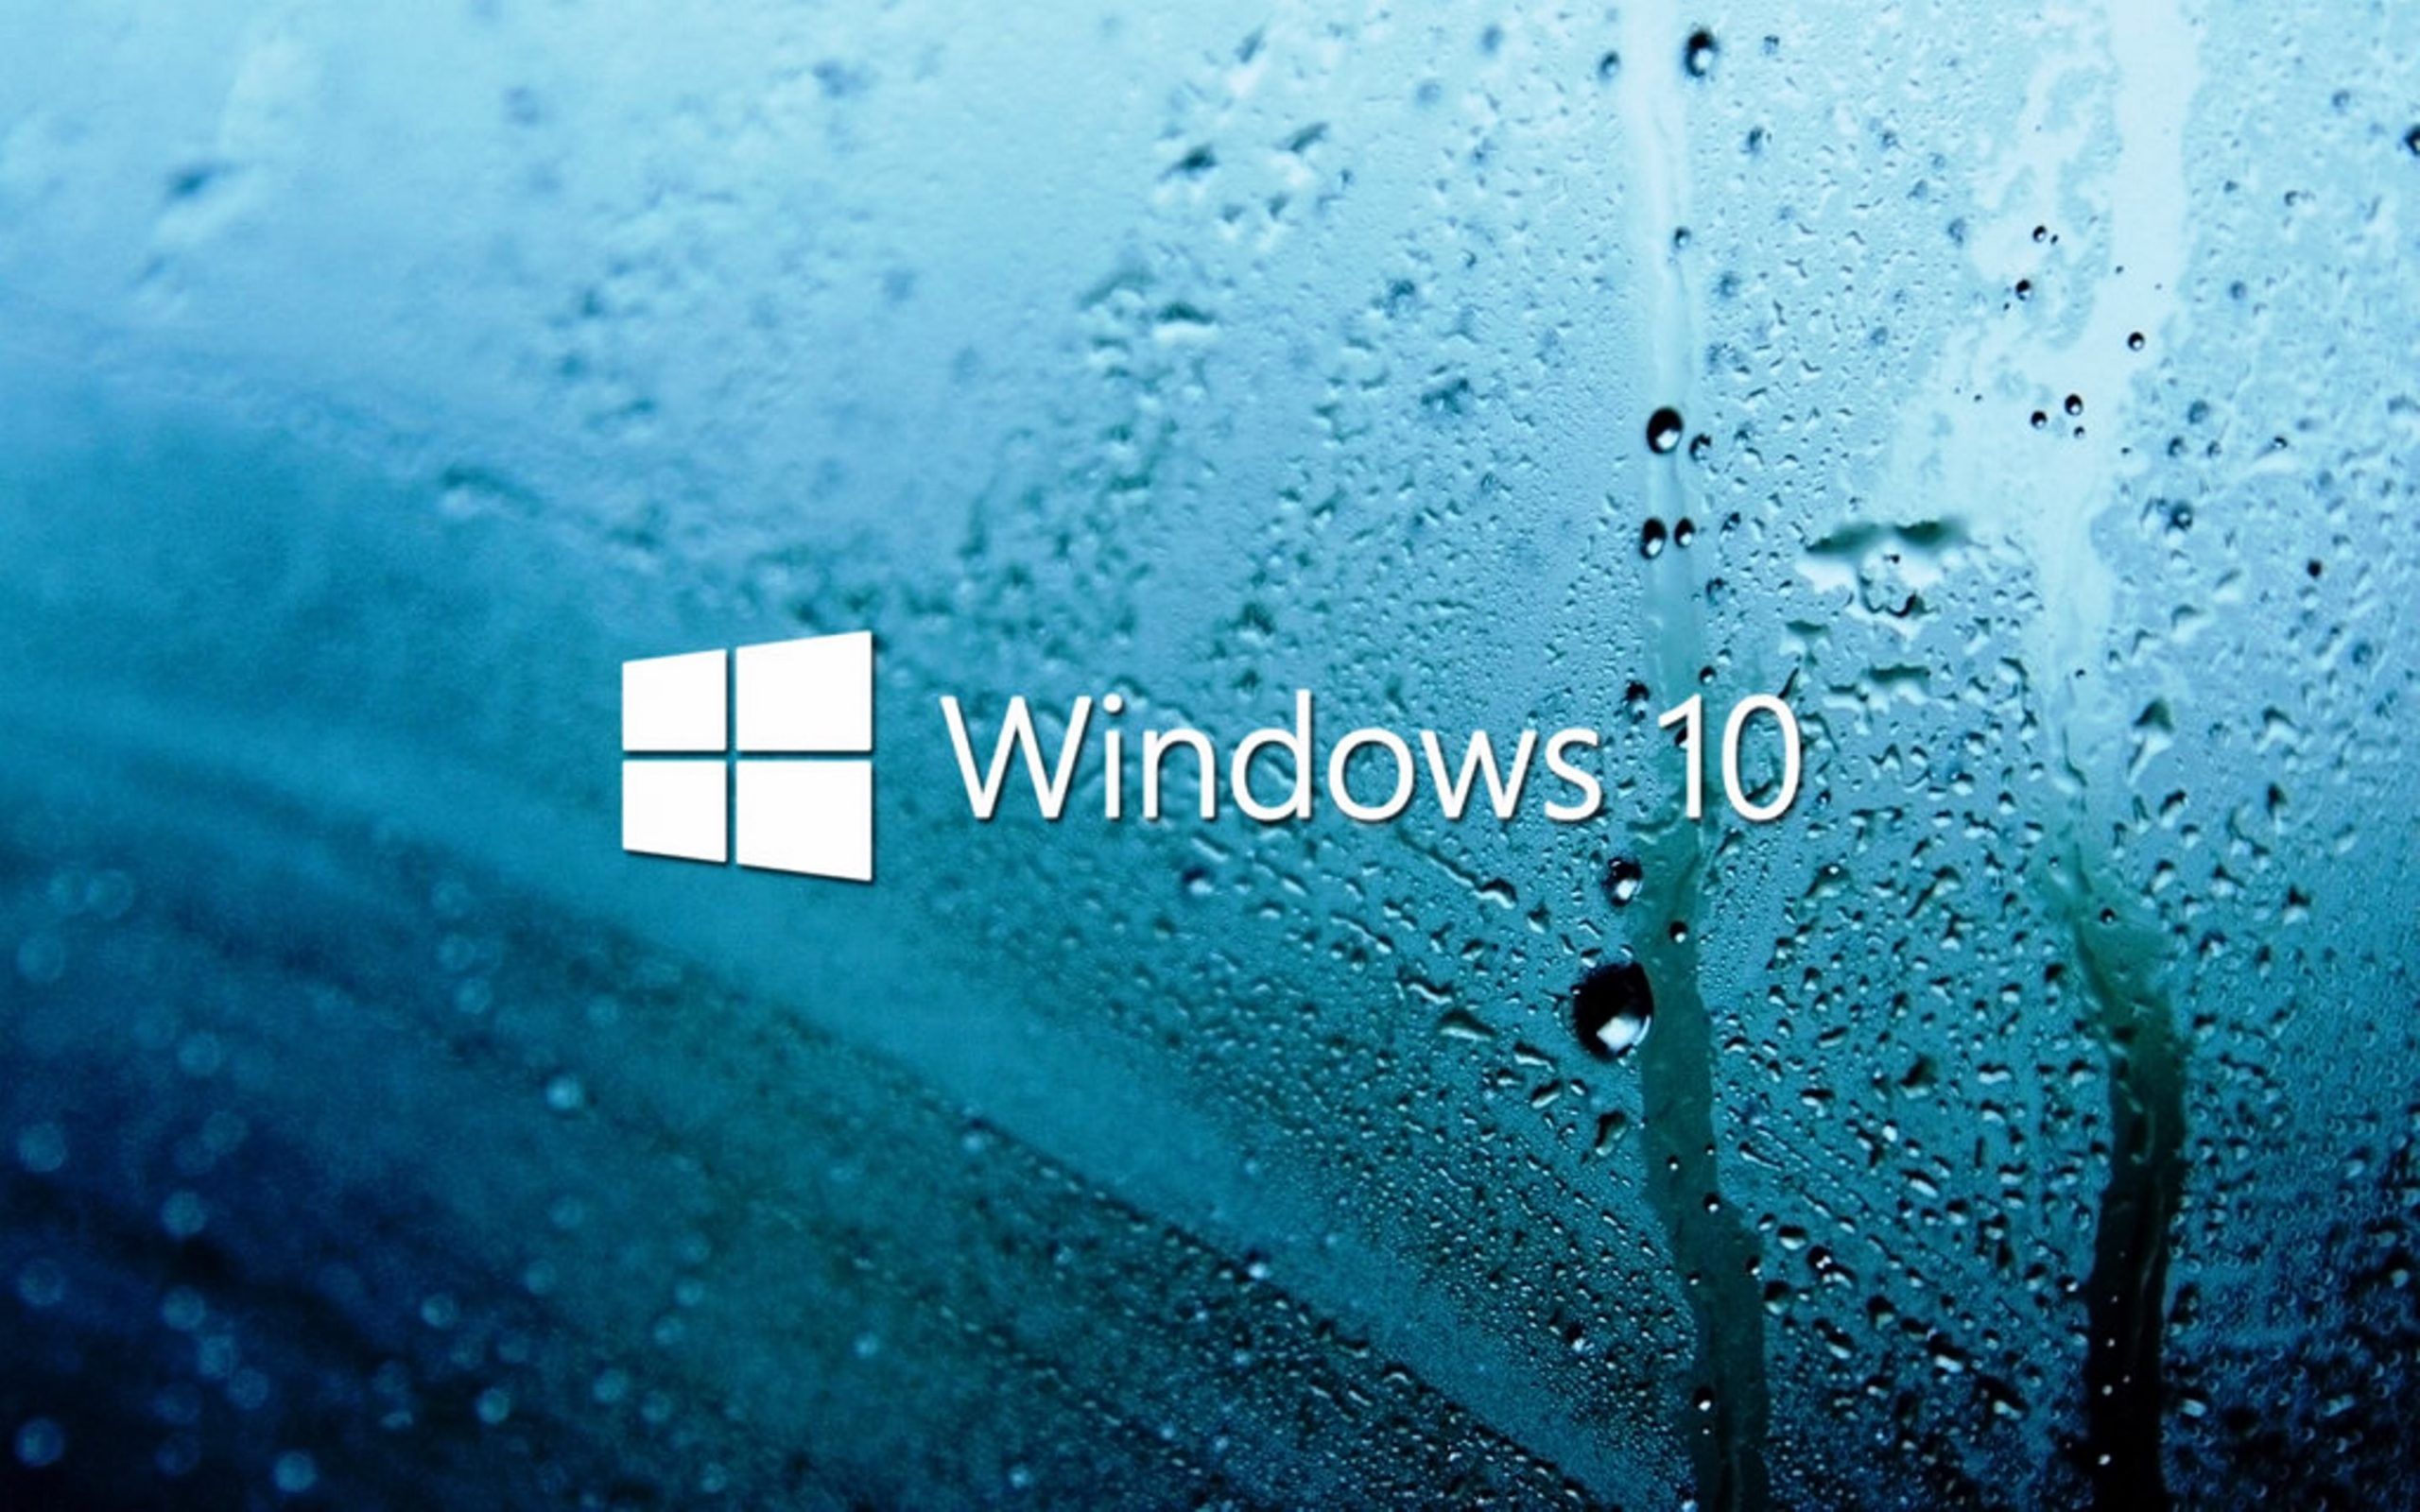 Windows 10 wallpaper HD 4k for desktop